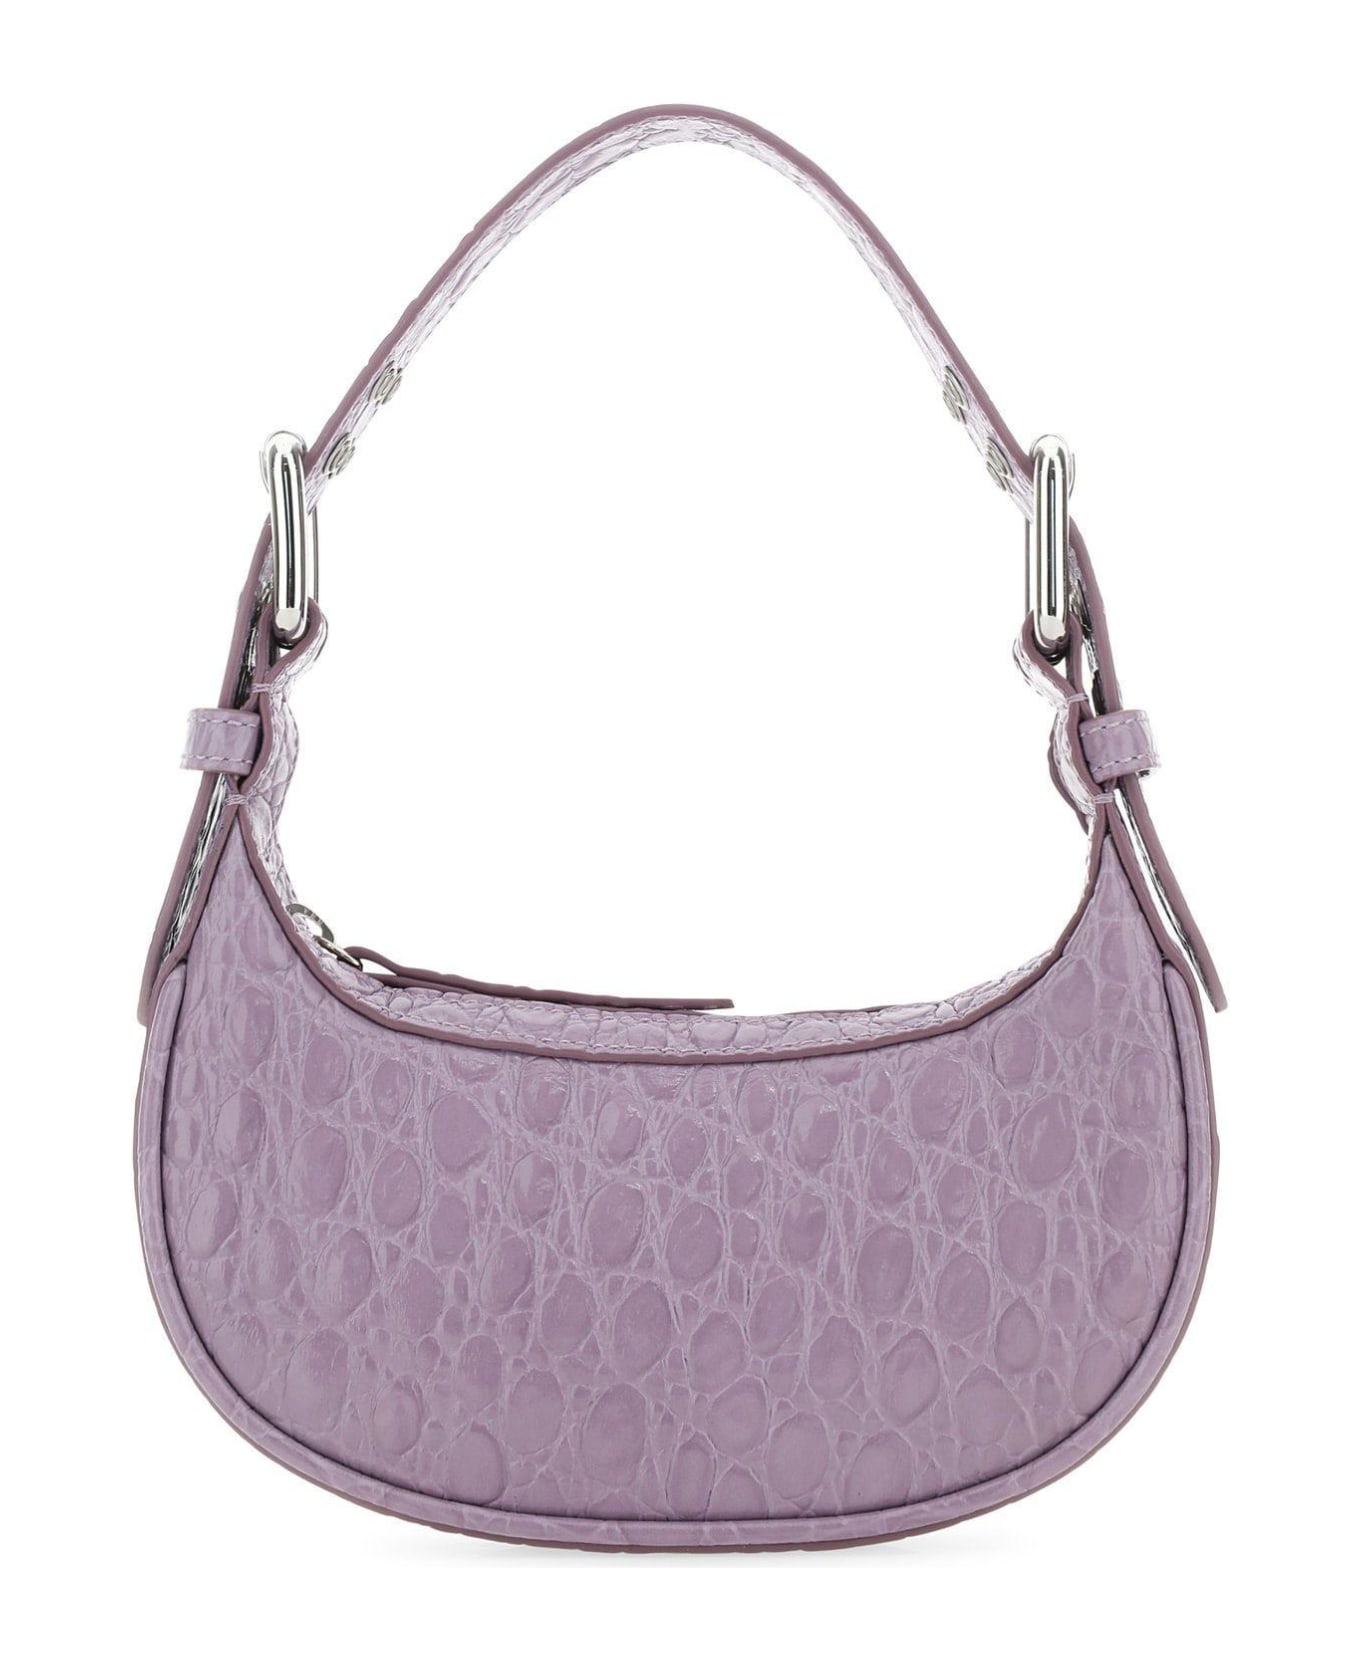 BY FAR Lilac Leather Mini Soho Handbag - Viola